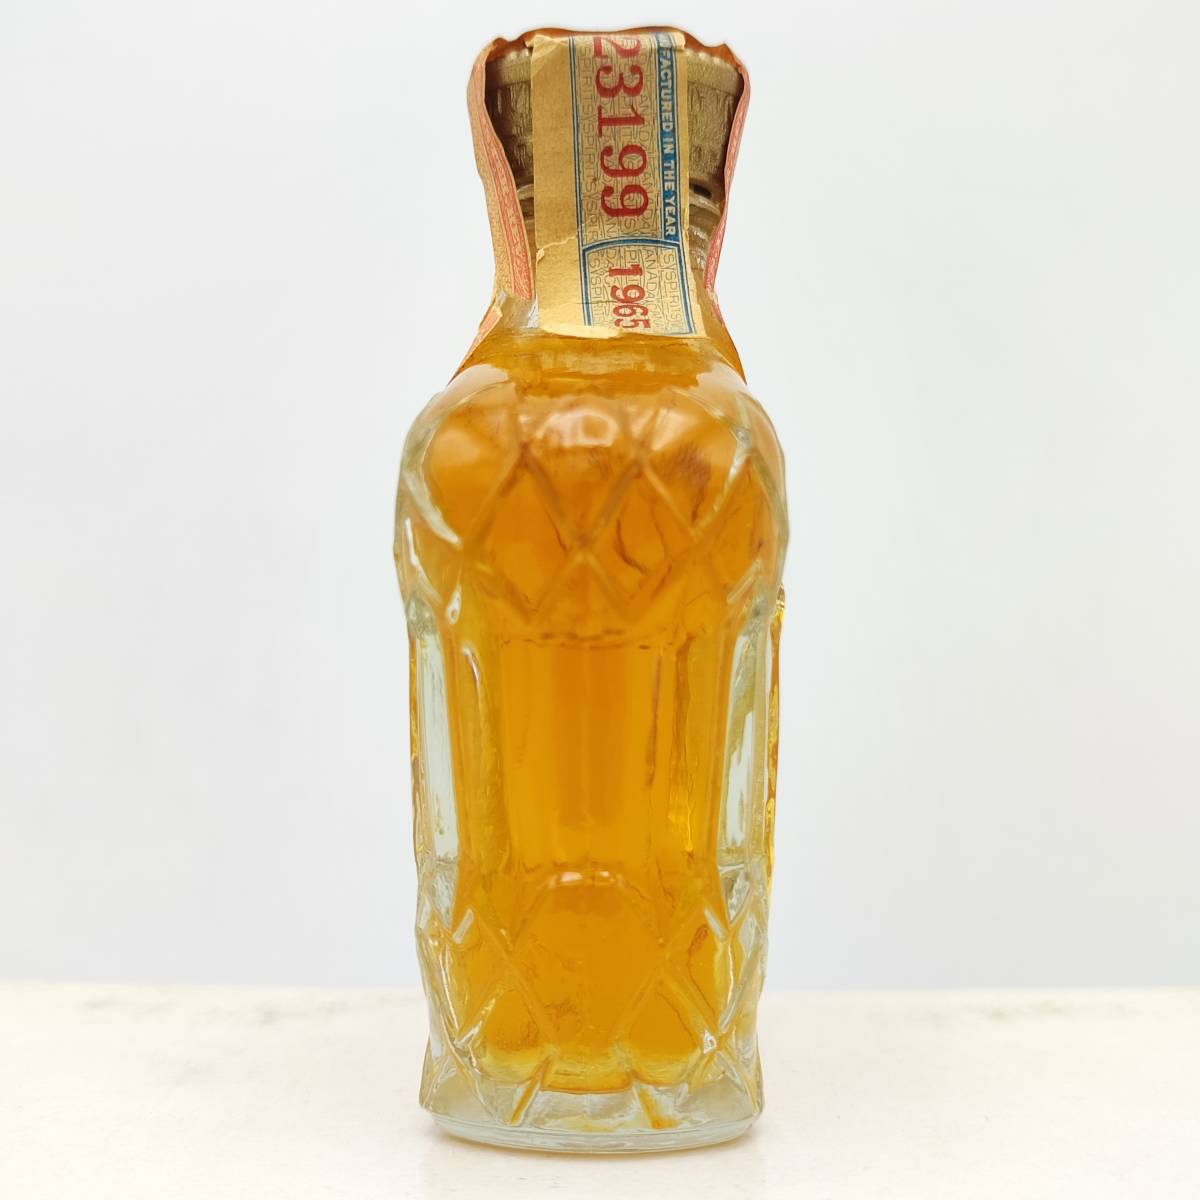 【全国送料無料】Seagram's Crown Royal Fine De Luxe Canadian Whisky 1965　40度　1/10PINT=約47ml【クラウンローヤル カナディアン】